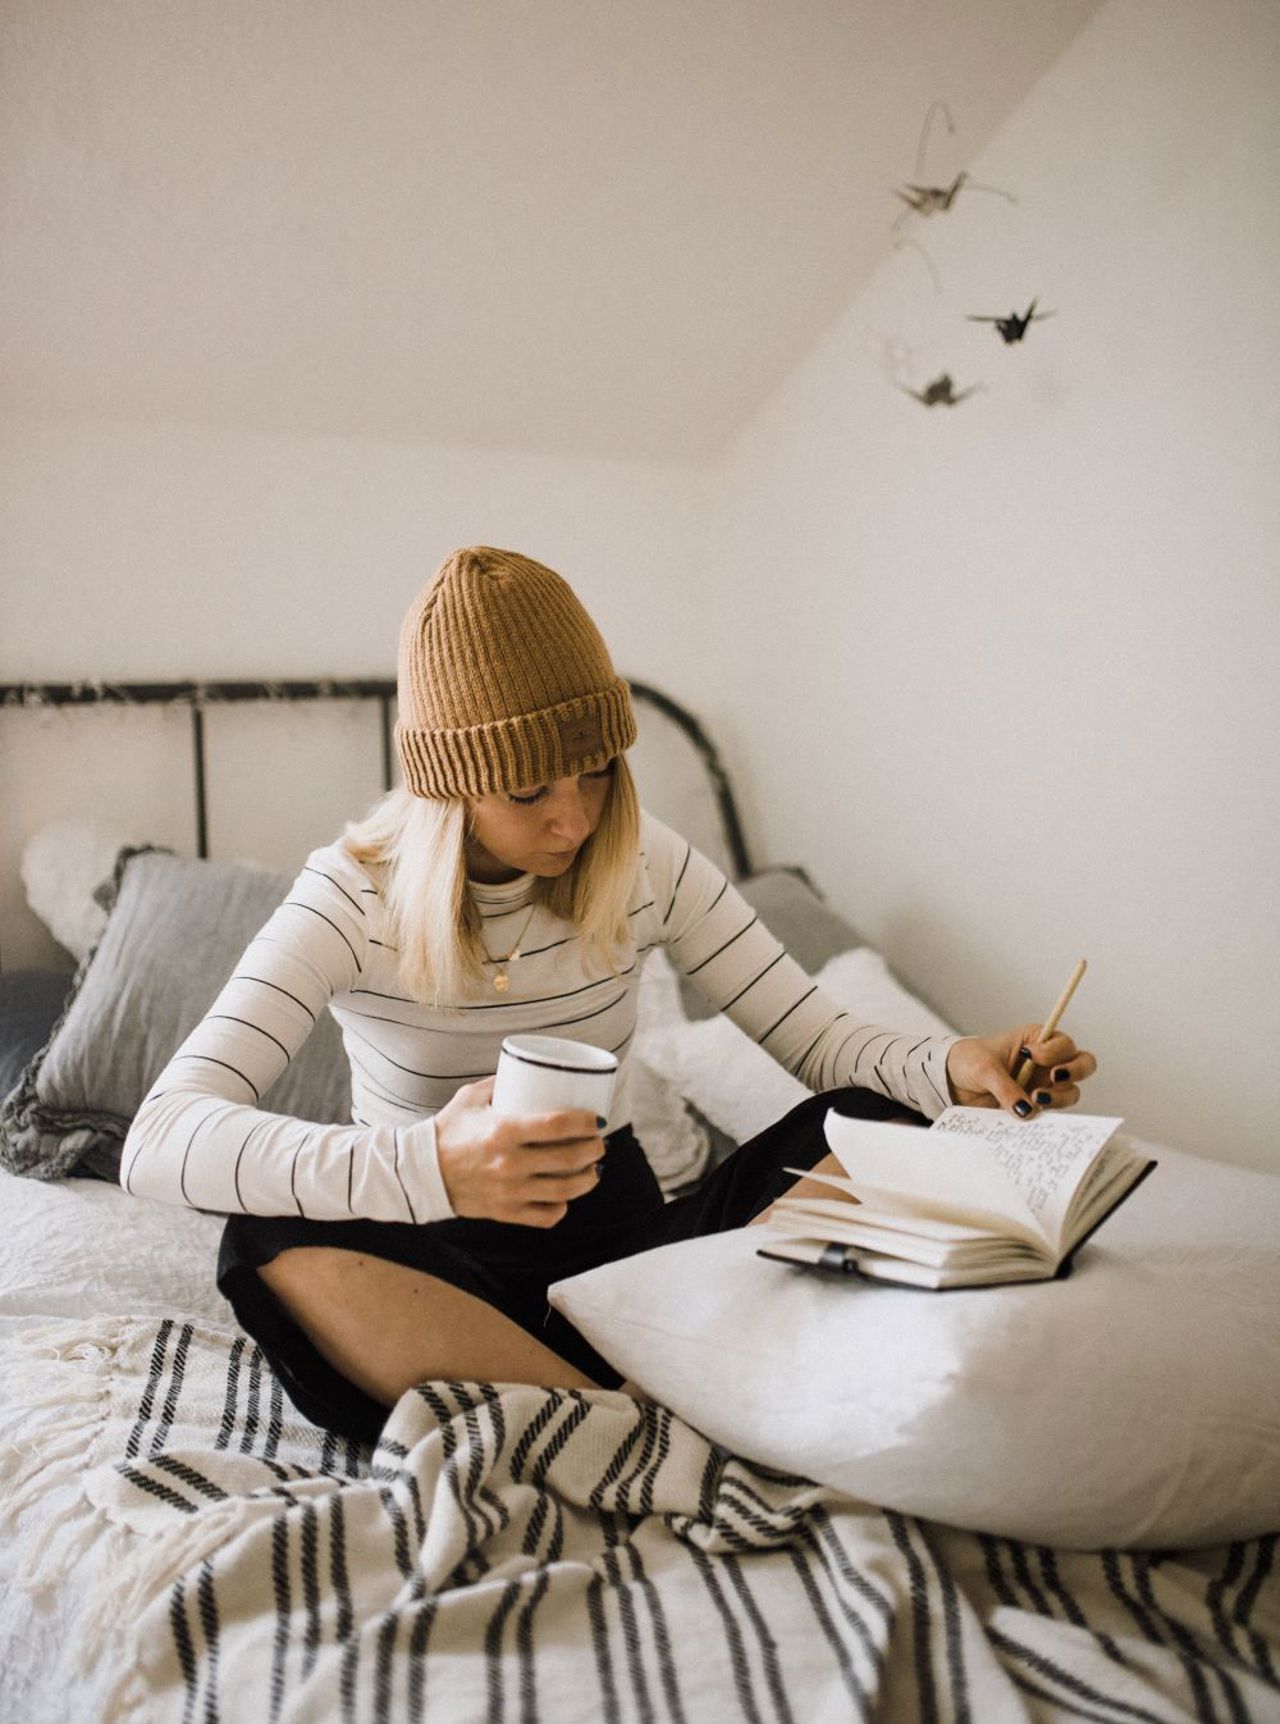 Ei jente sit oppi ei seng med ein kaffikopp i handa og skriv